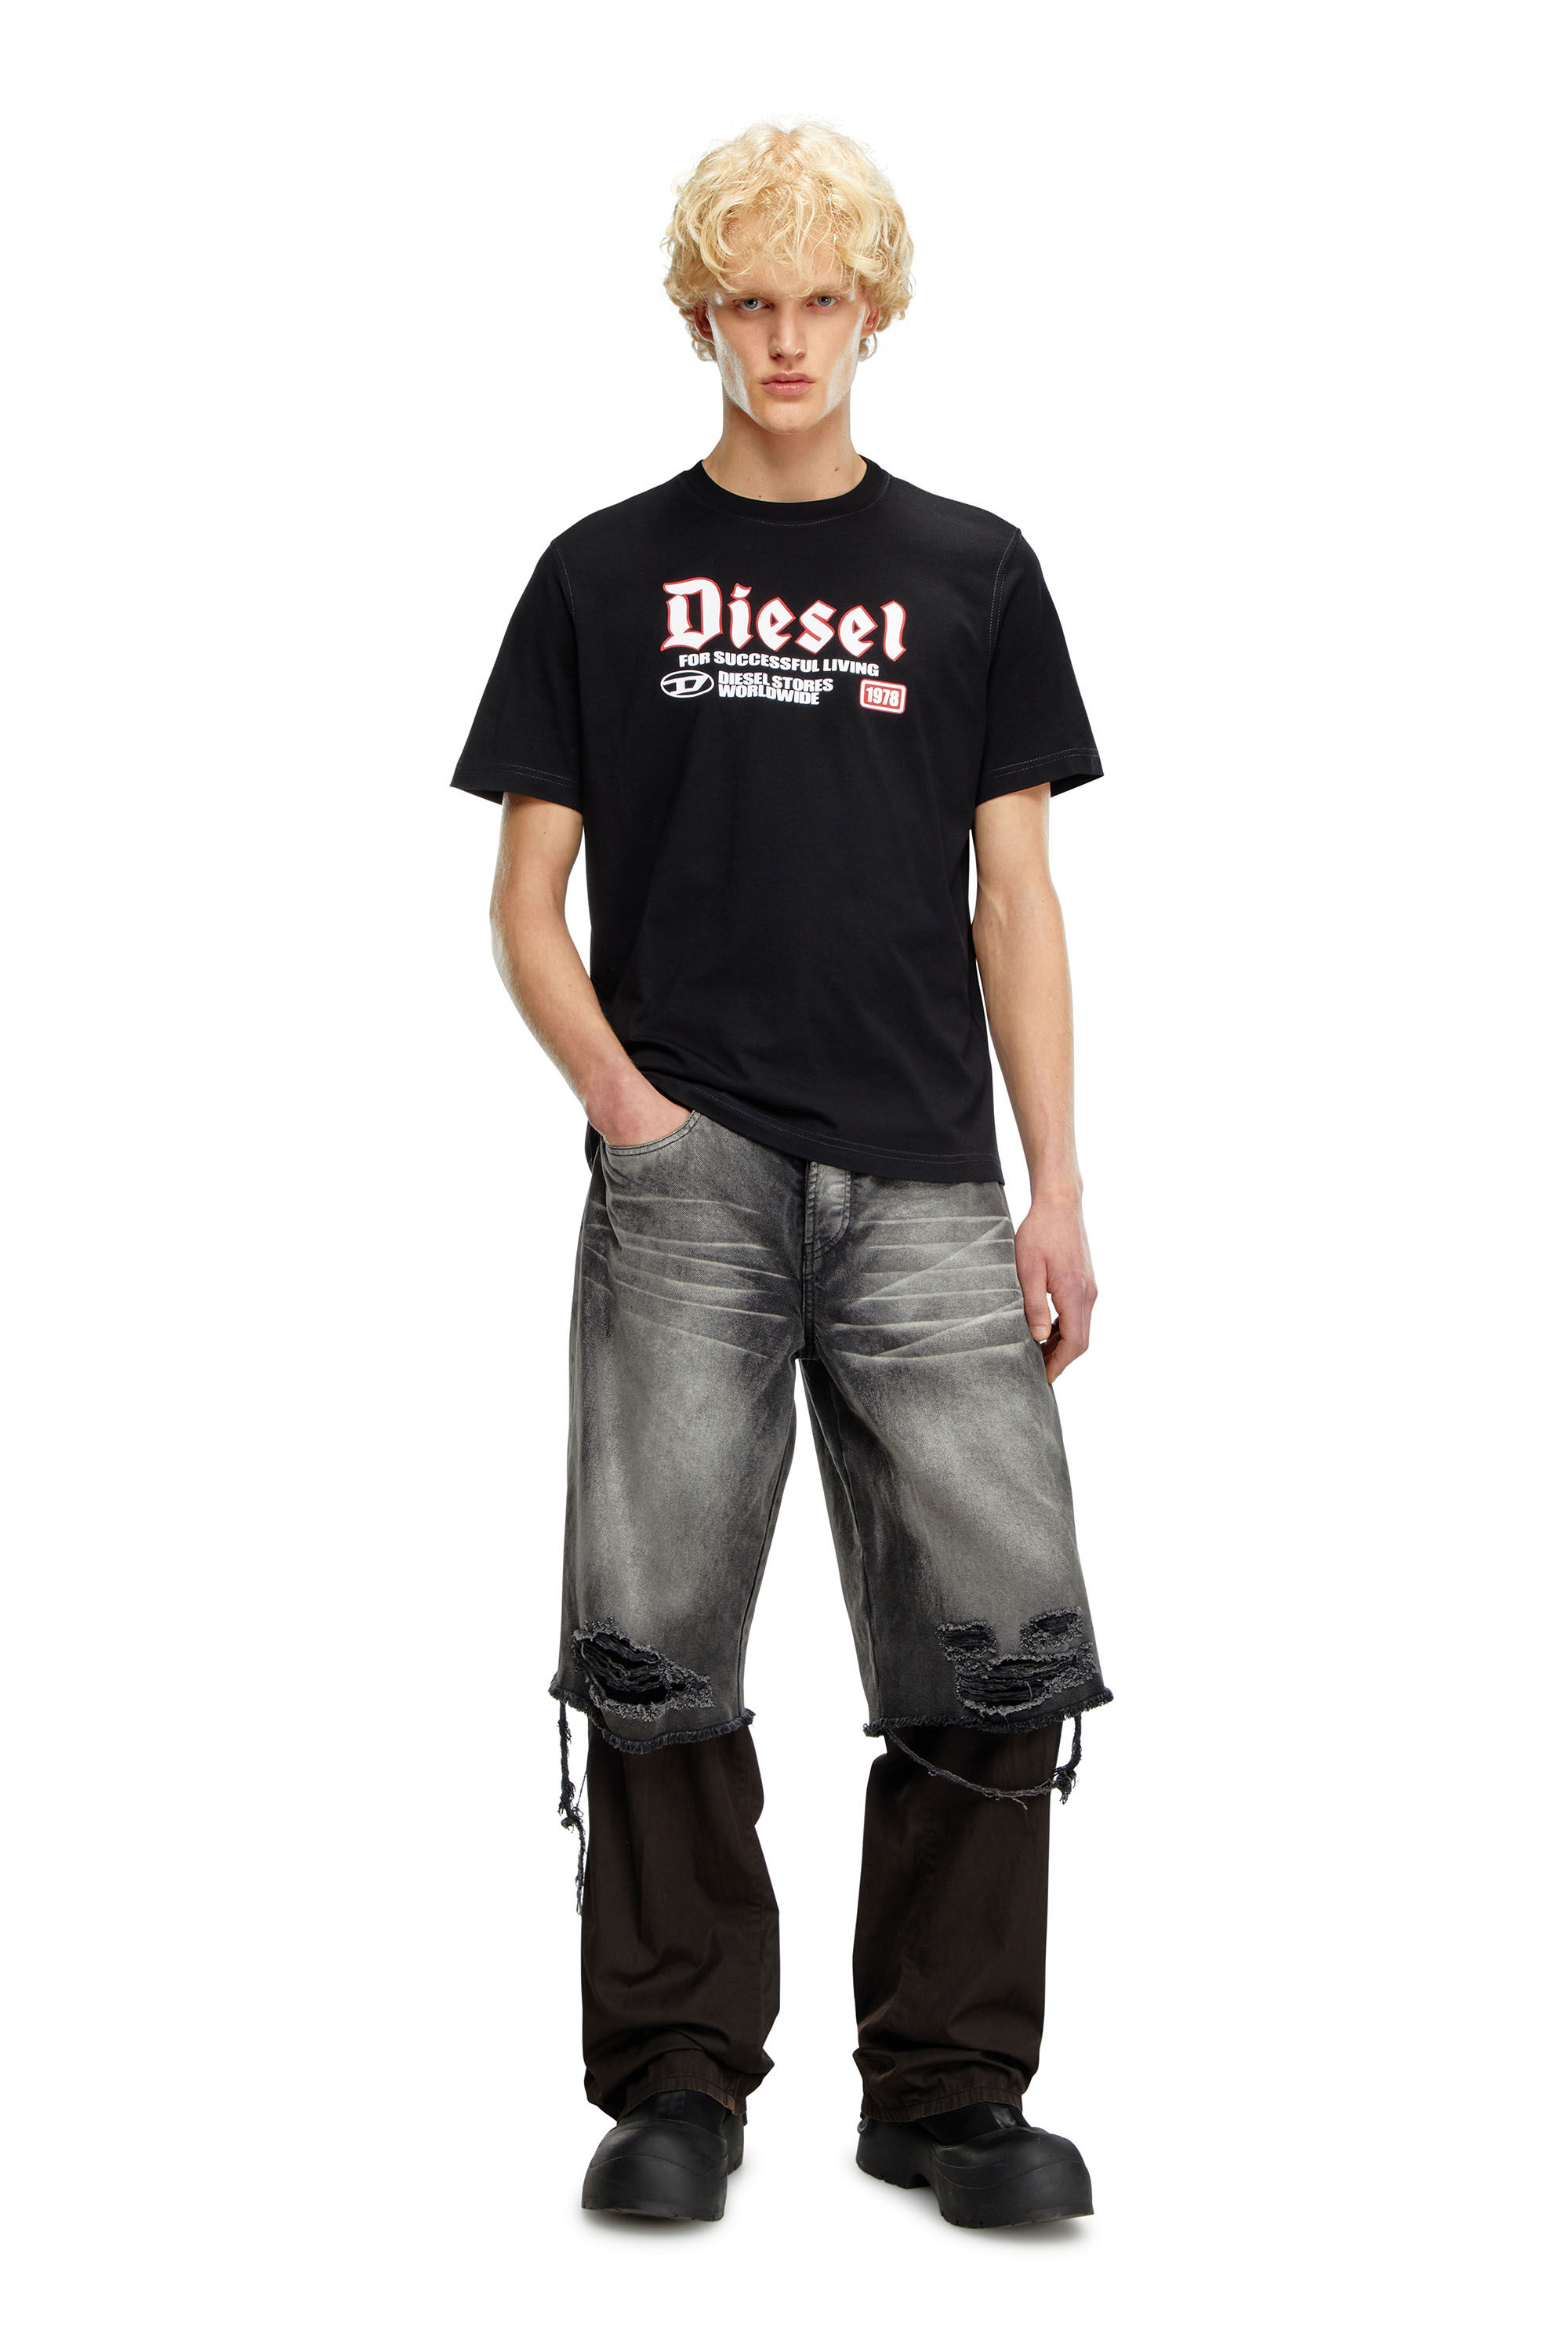 Diesel - T-ADJUST-K1, Homme T-shirt avec imprimé Diesel floqué in Noir - Image 1